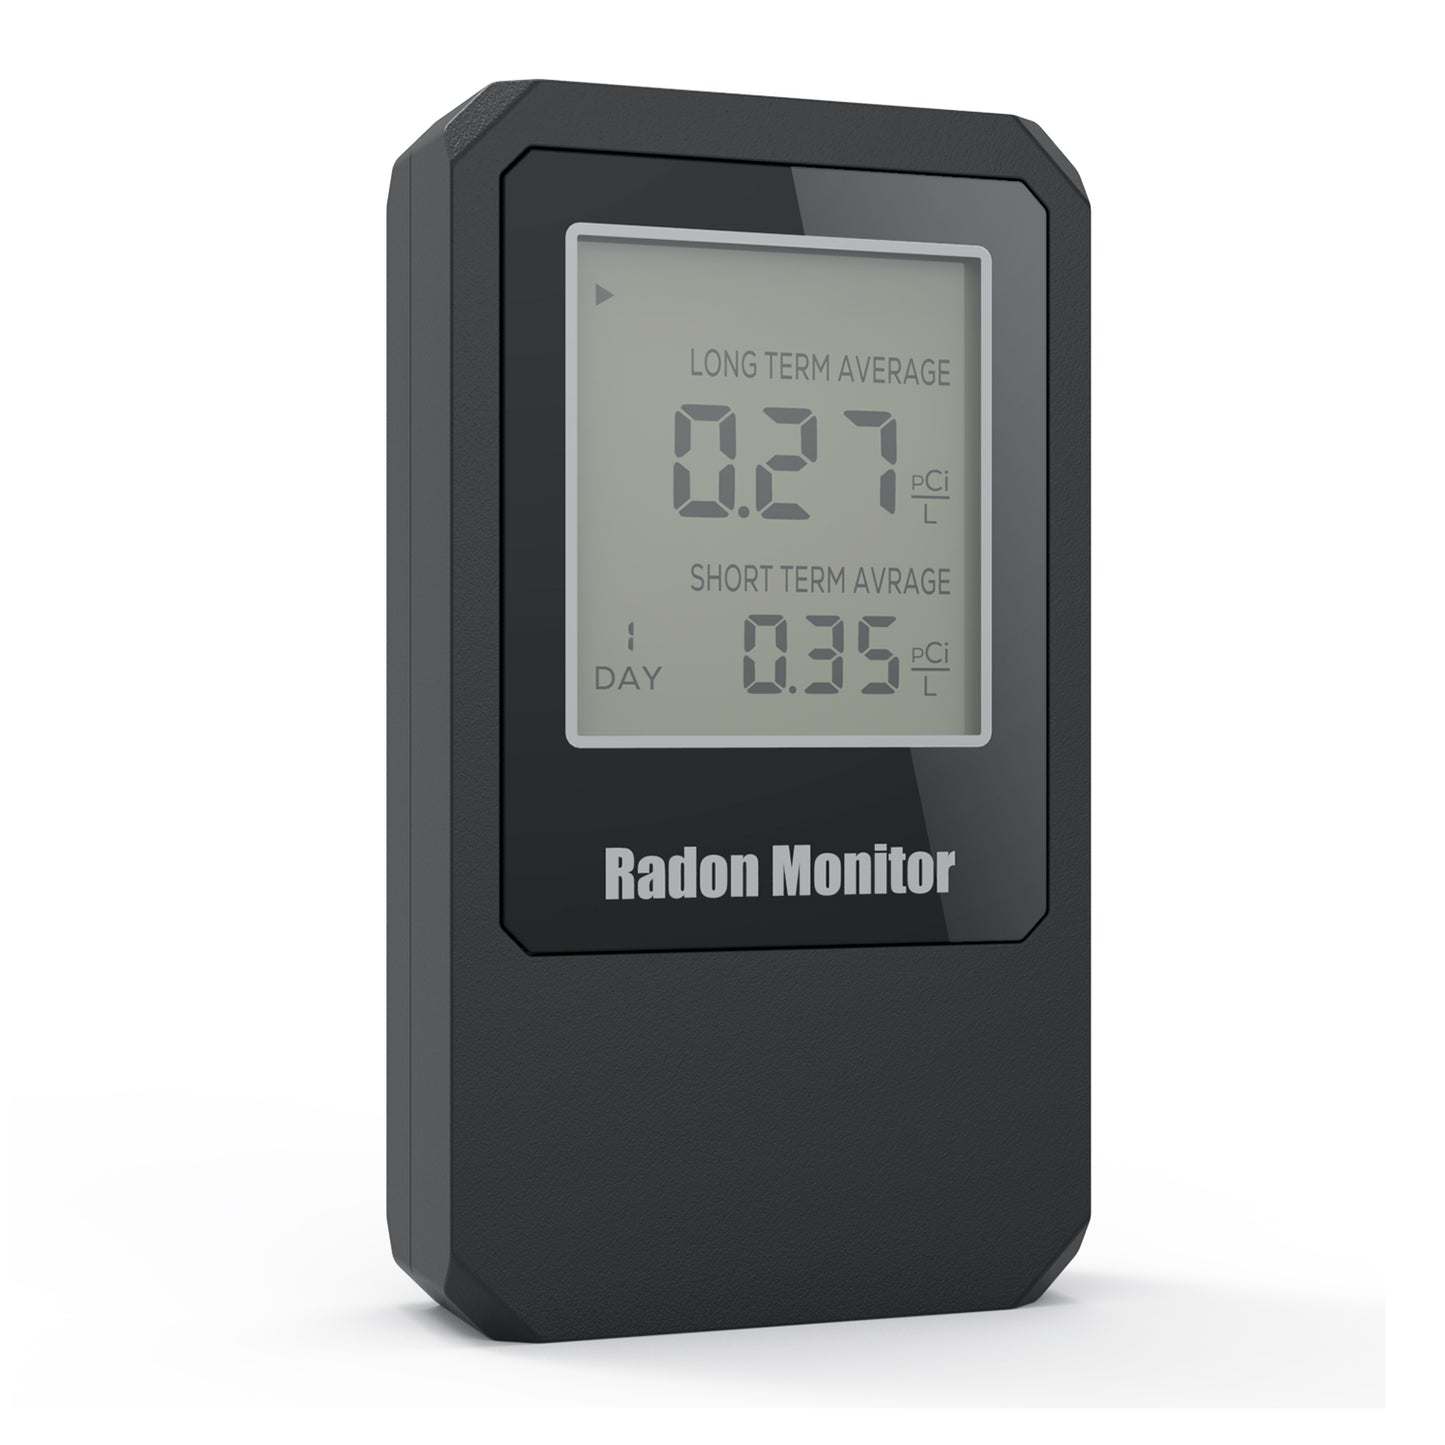 Detector de radón doméstico, medidor de radón portátil, monitor de radón  doméstico Elifecity a largo y corto plazo, alimentado por batería, fácil de